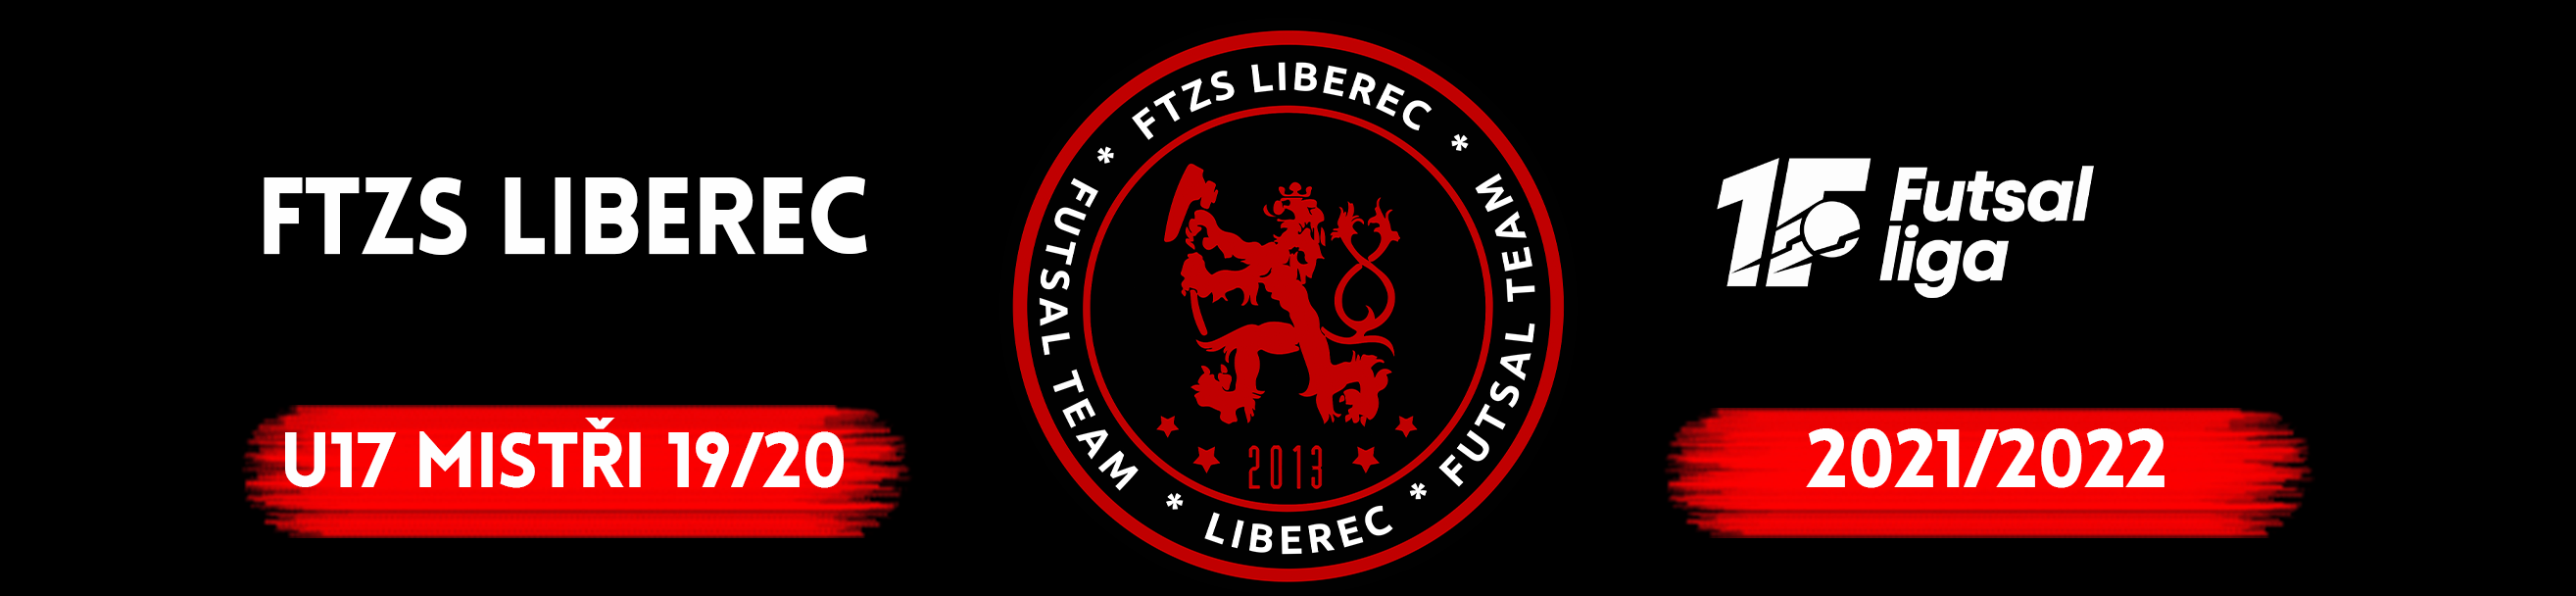 FTZS Liberec, futsal club